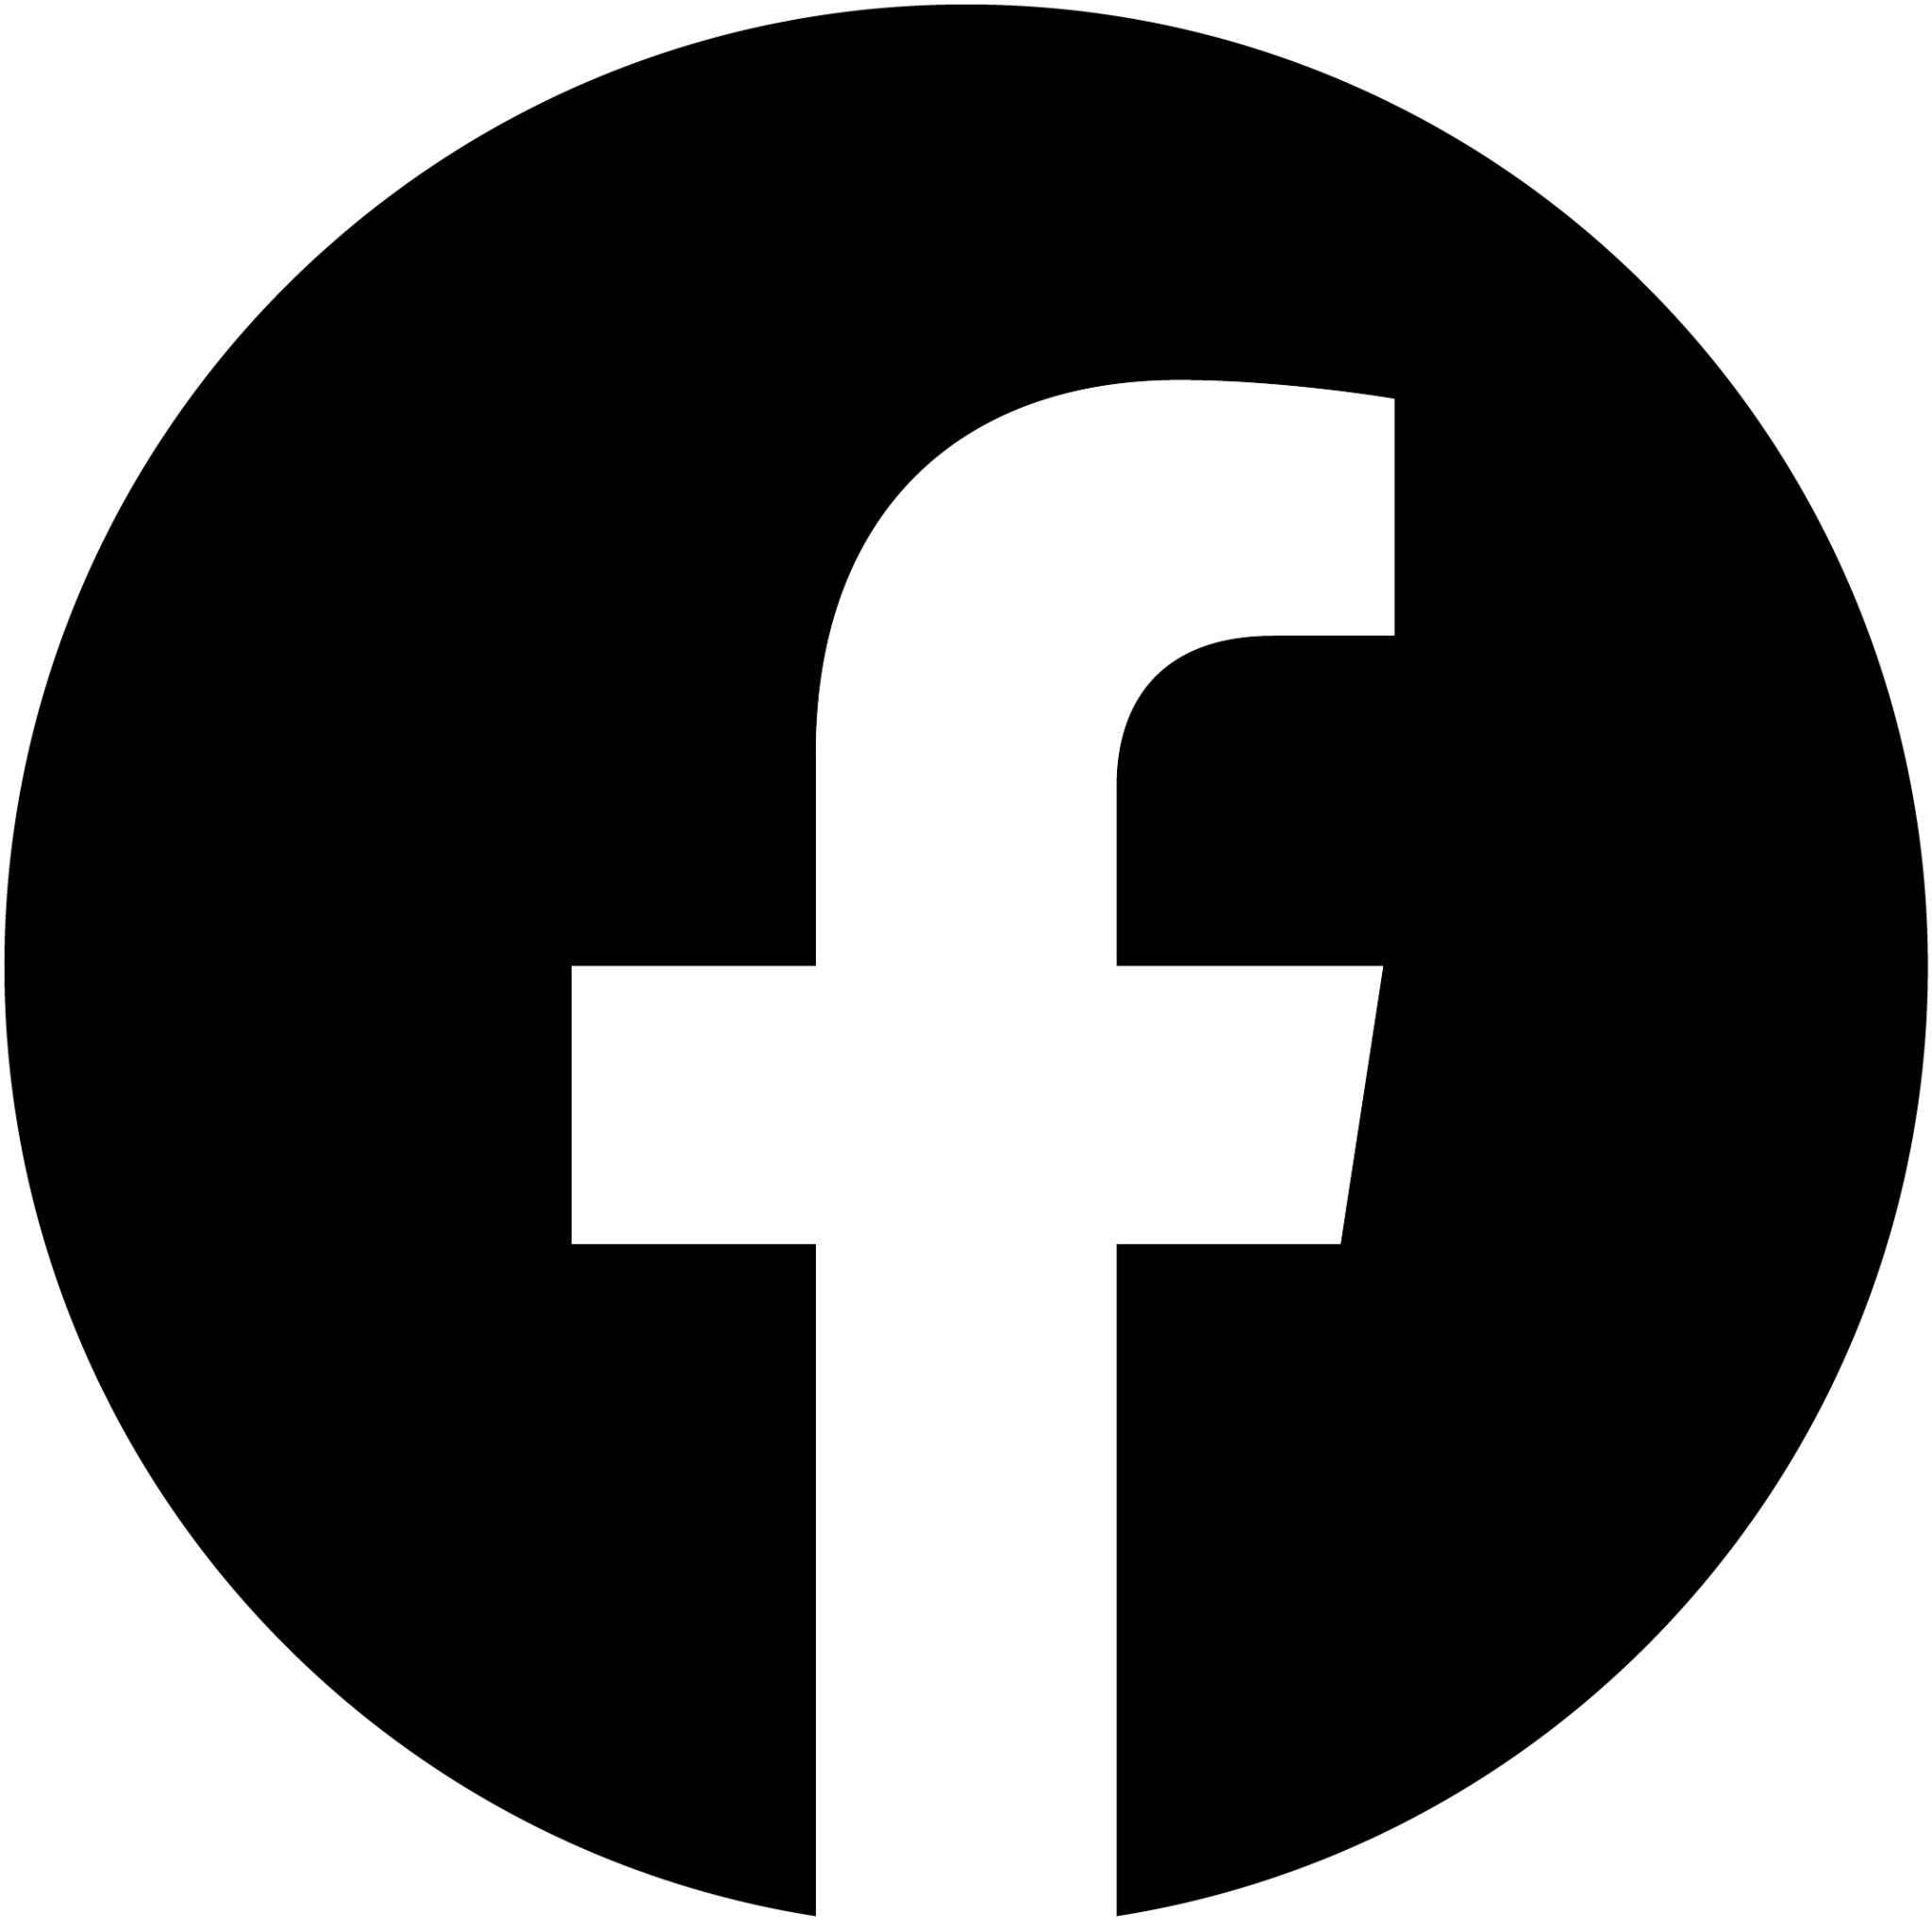 Logo Facebook : Téléchargement, Signification, Histoire